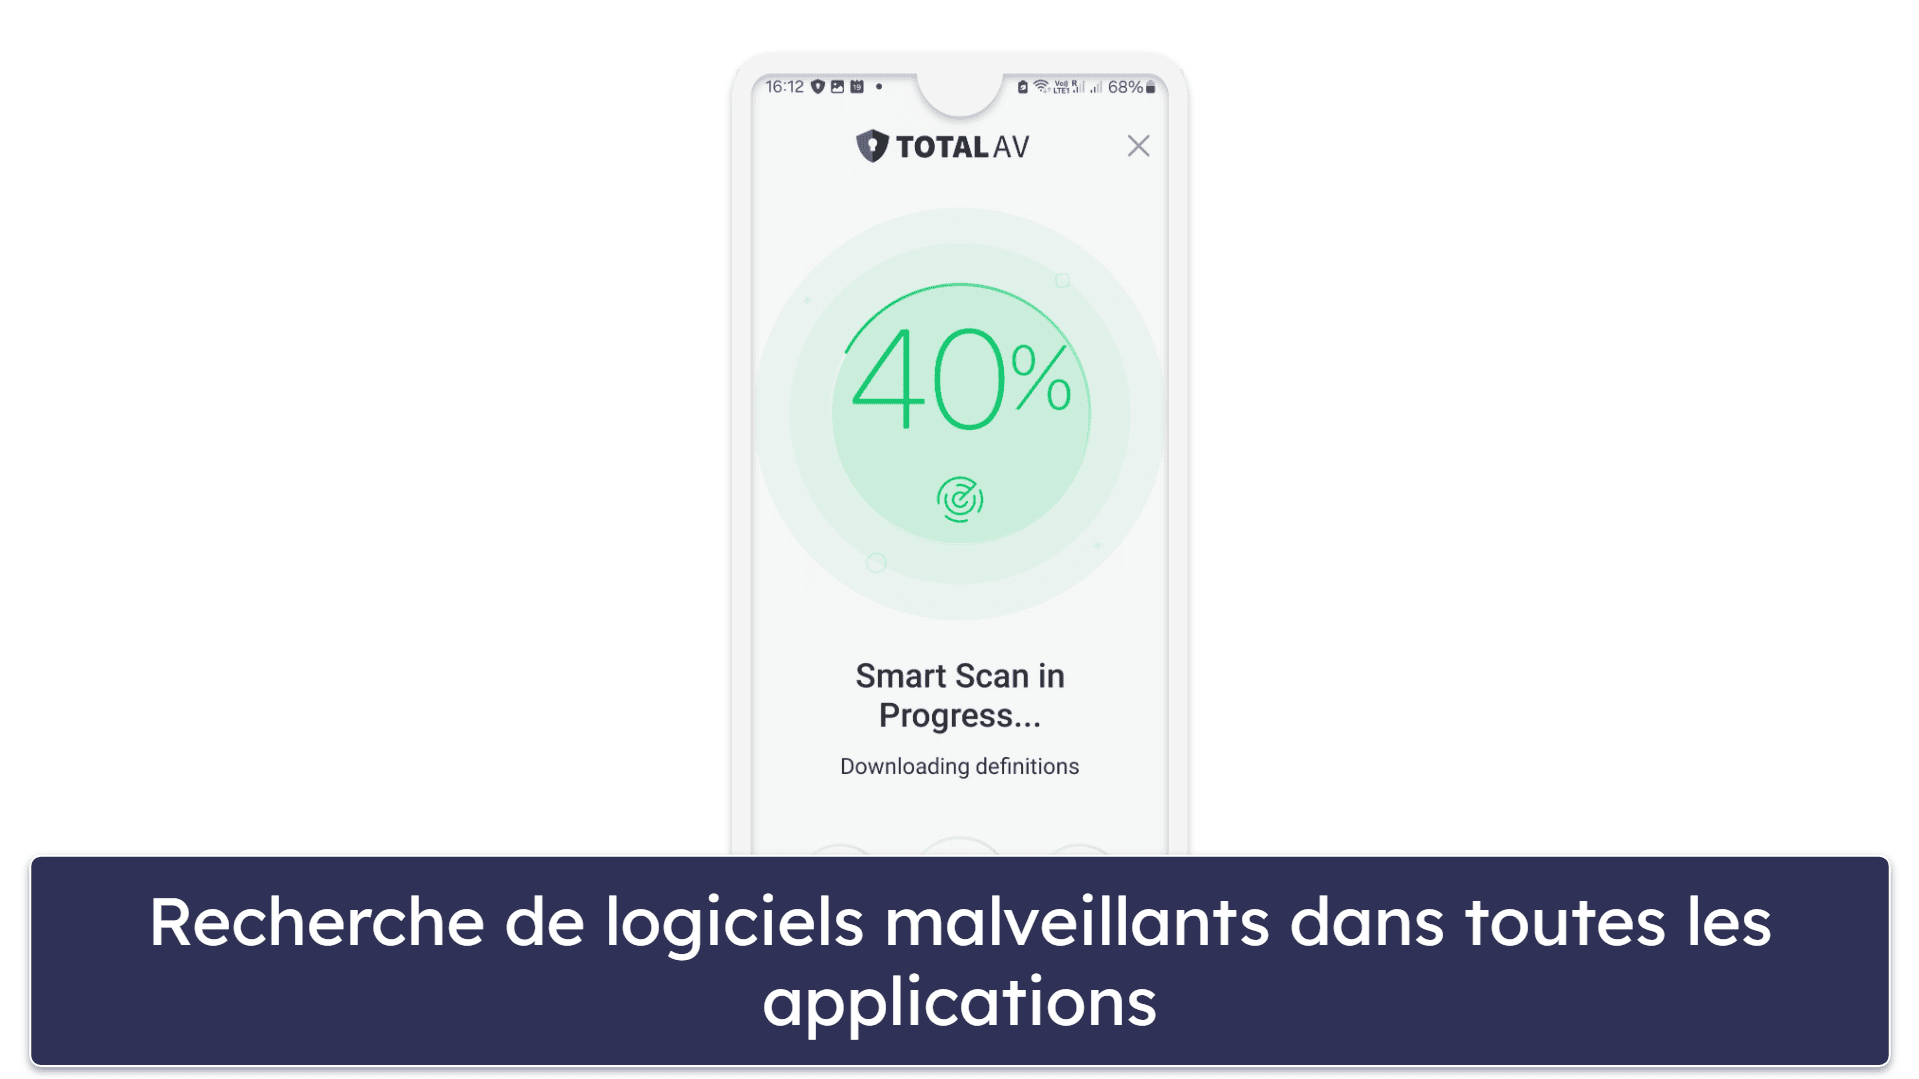 TotalAV application mobile